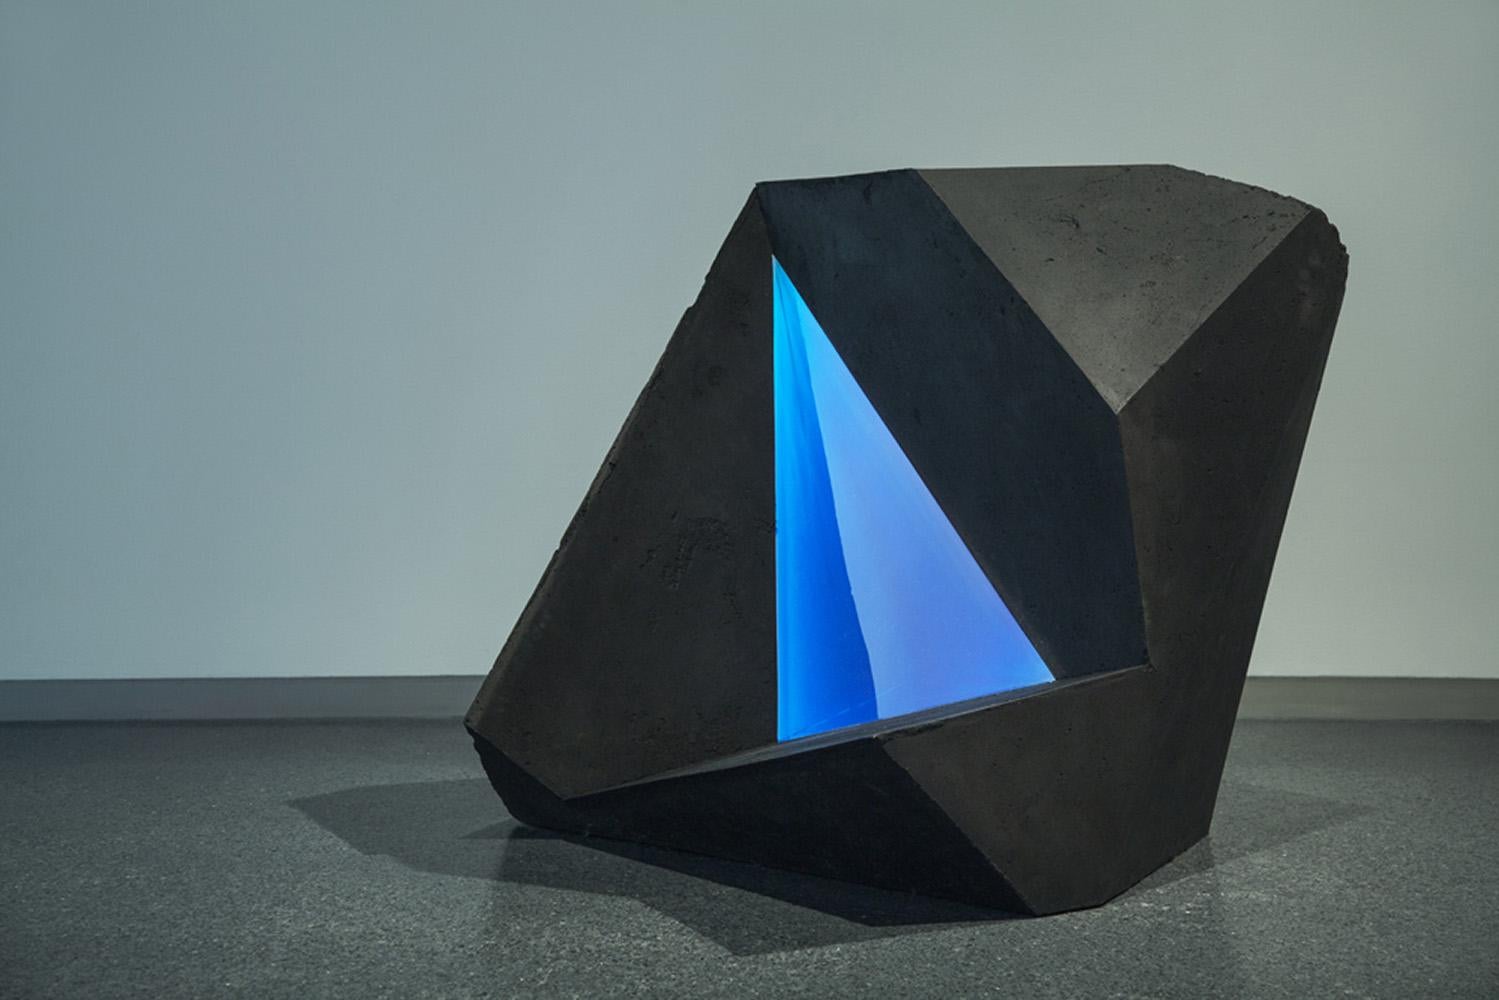 Steinkohle, Polyesterharz, Jesmonit. 100 cm × 100 cm × 100 cm.
Der Künstler hat die Serie Carbon Voids geschaffen, indem er verschiedene geometrische Positiv- und Negativformen miteinander kombiniert hat, die Hohlräume bilden. In Carbon Void Blue